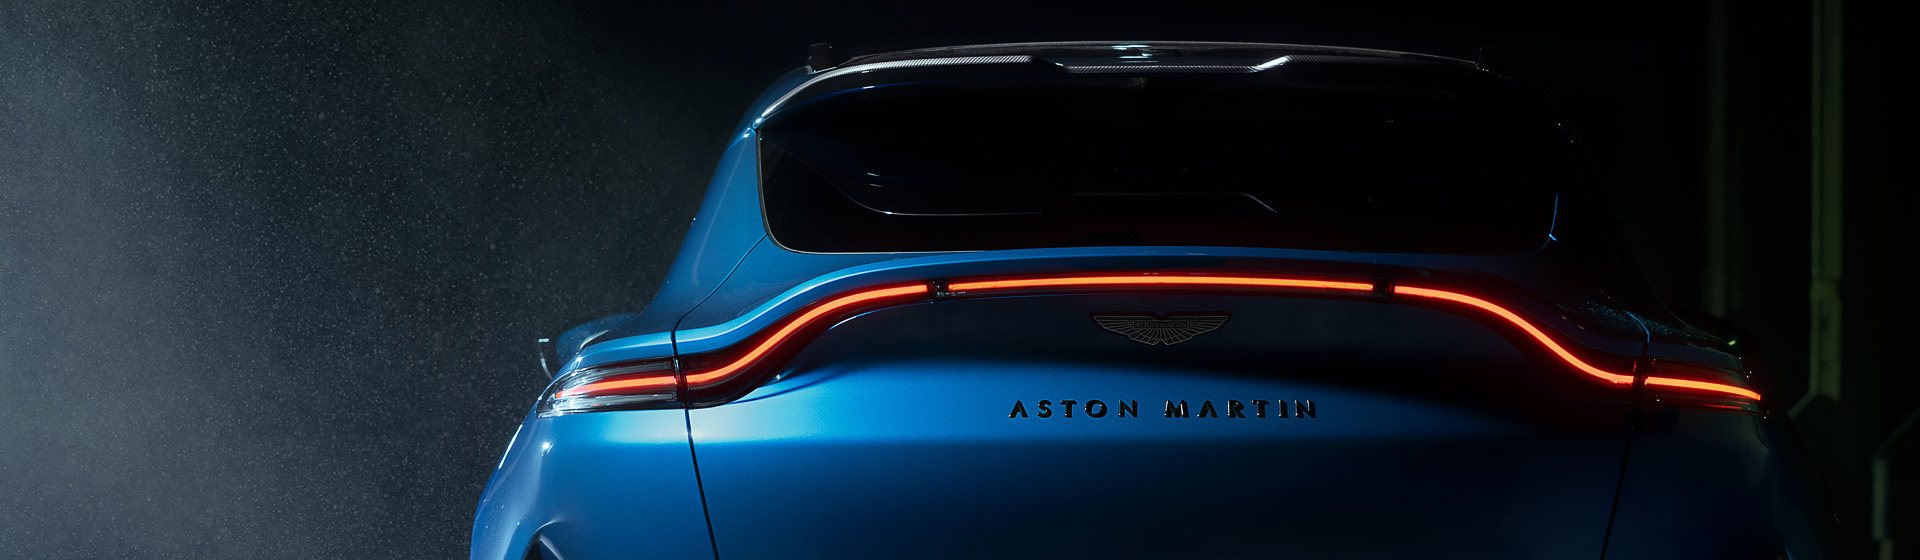 AUTO FUS GROUP Aston Martin